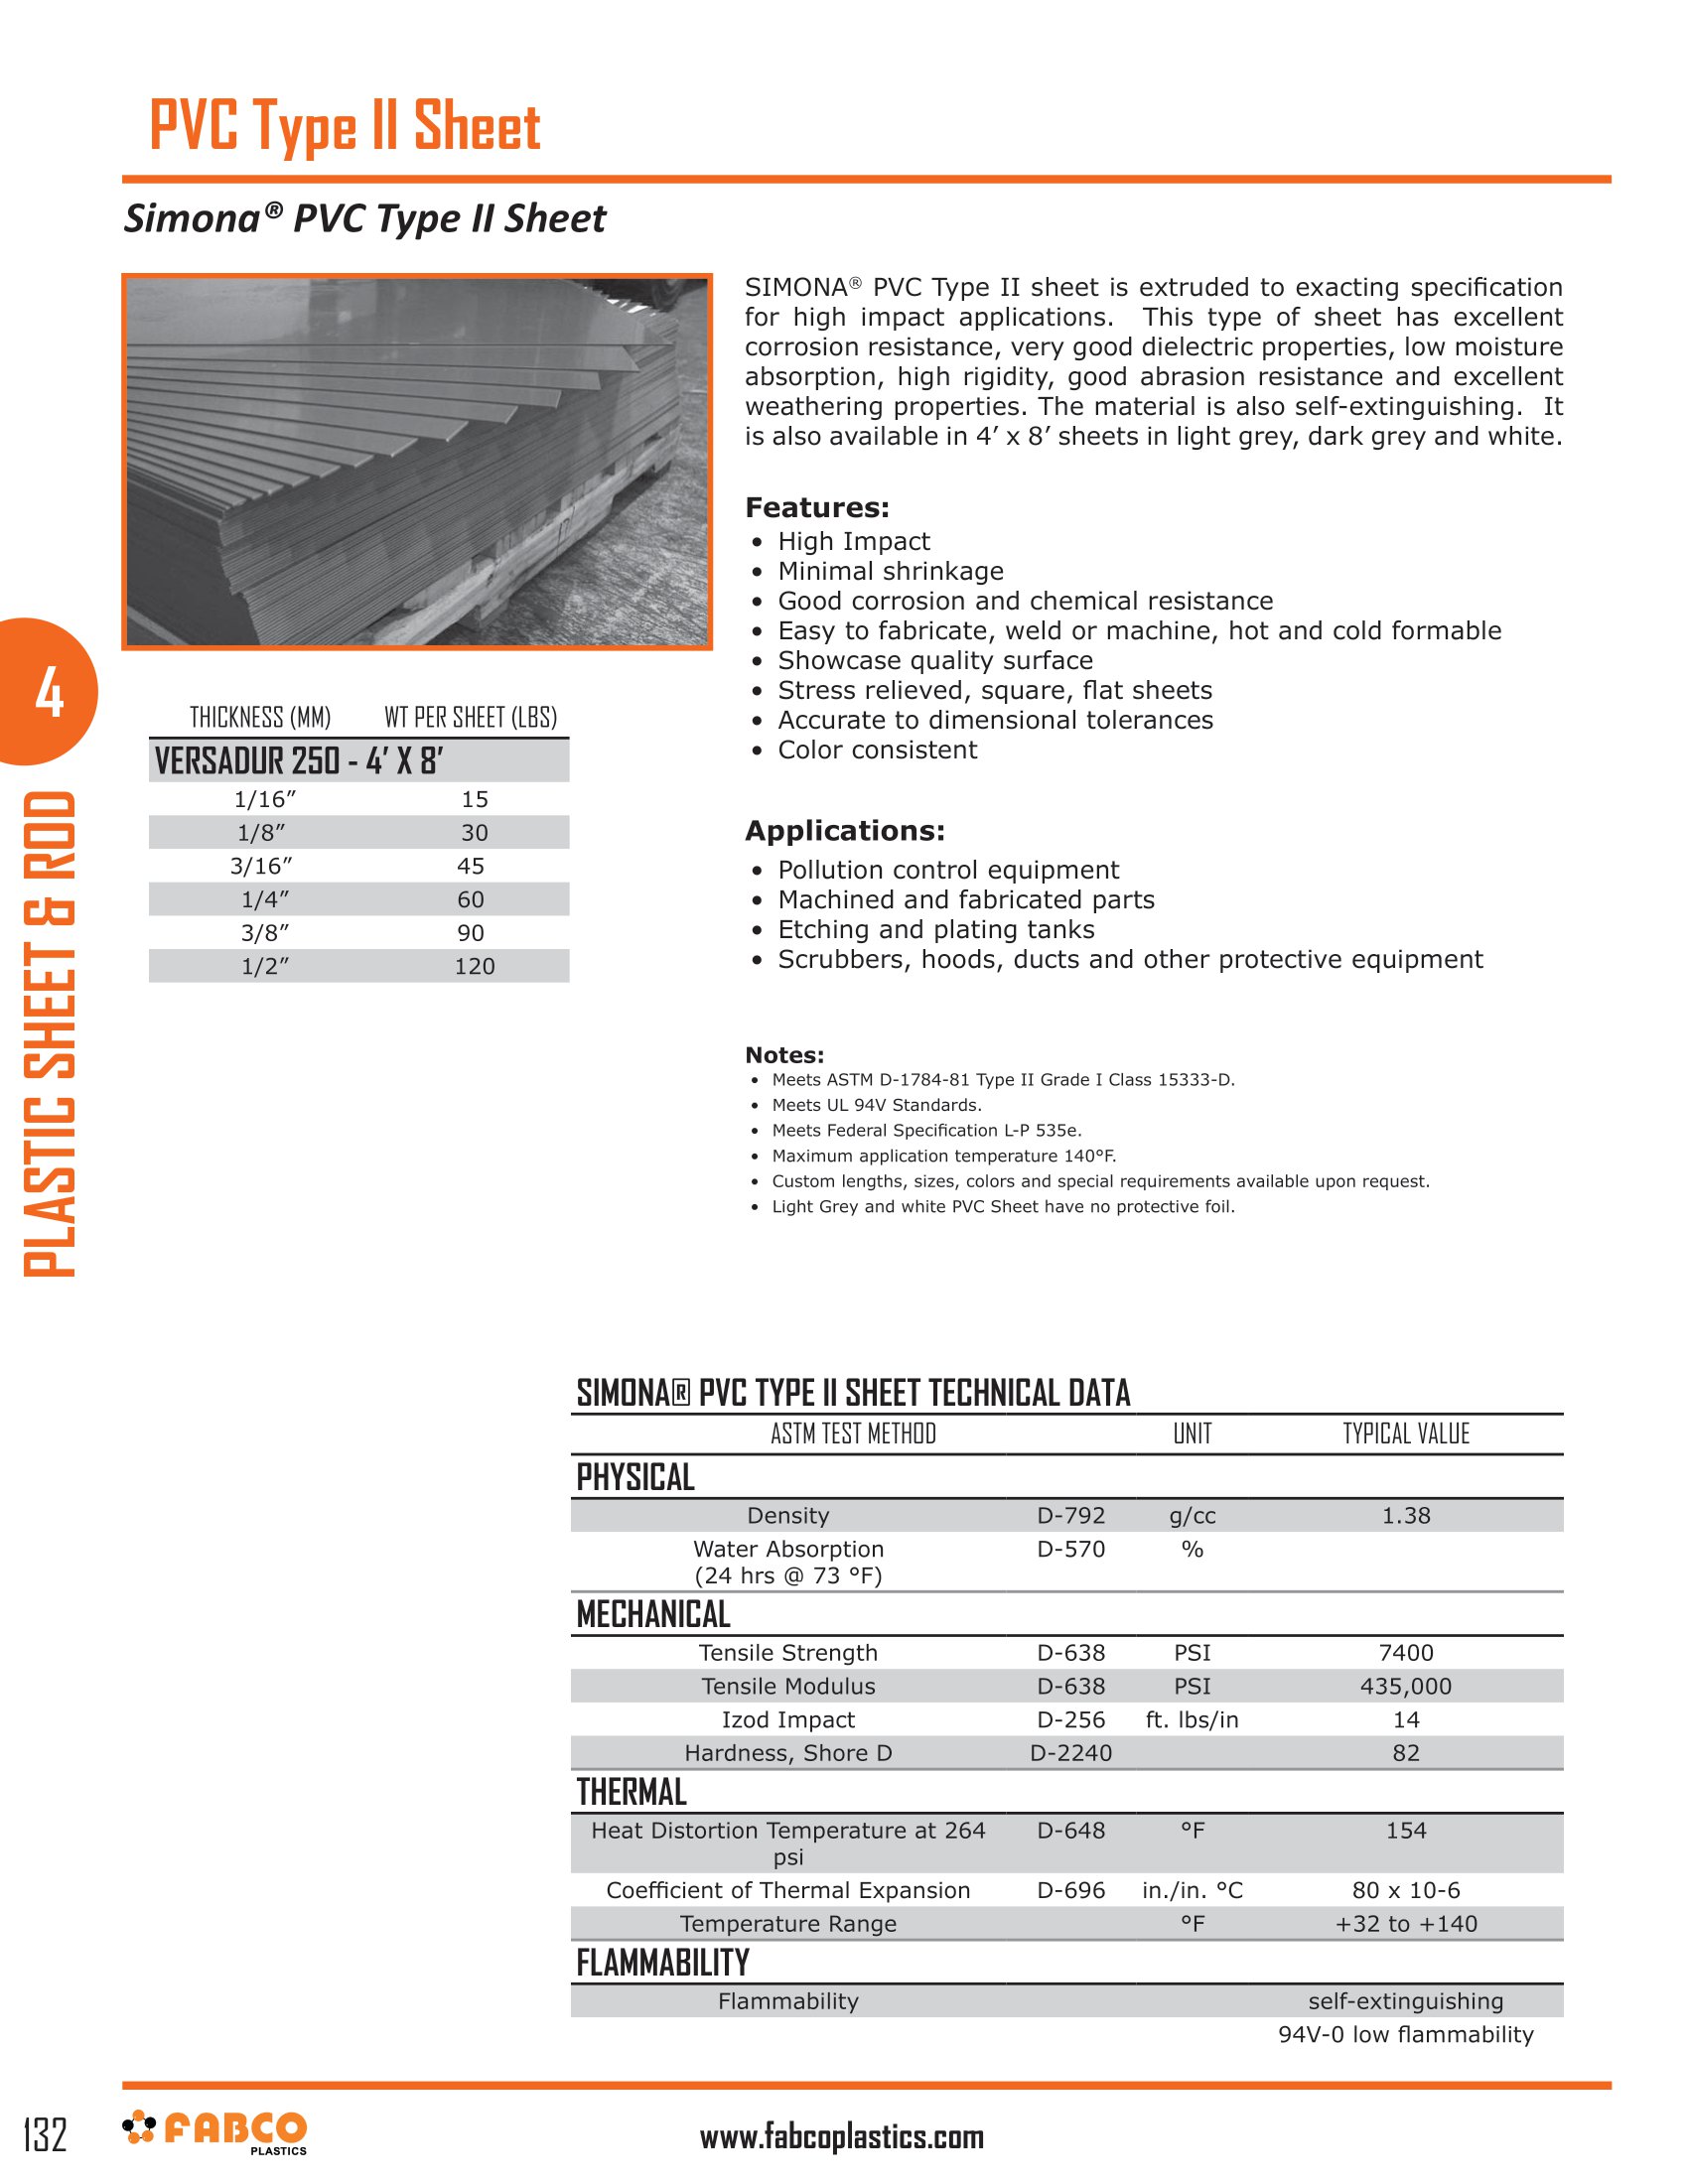 PVC Sheet Type II